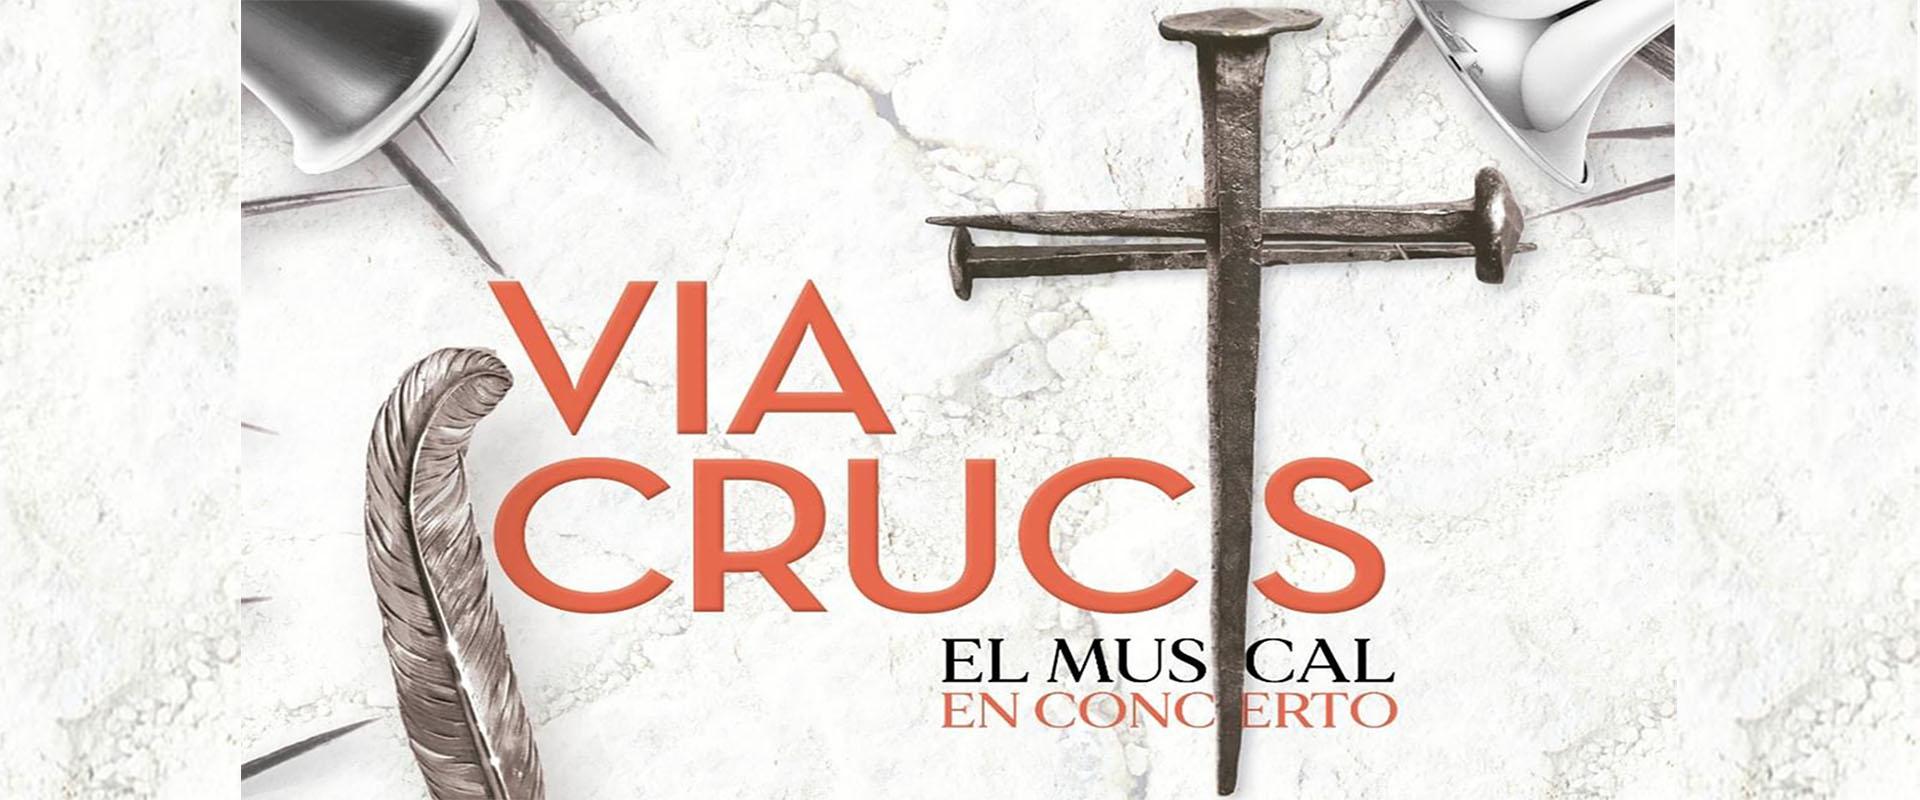 Vía Crucis, el musical